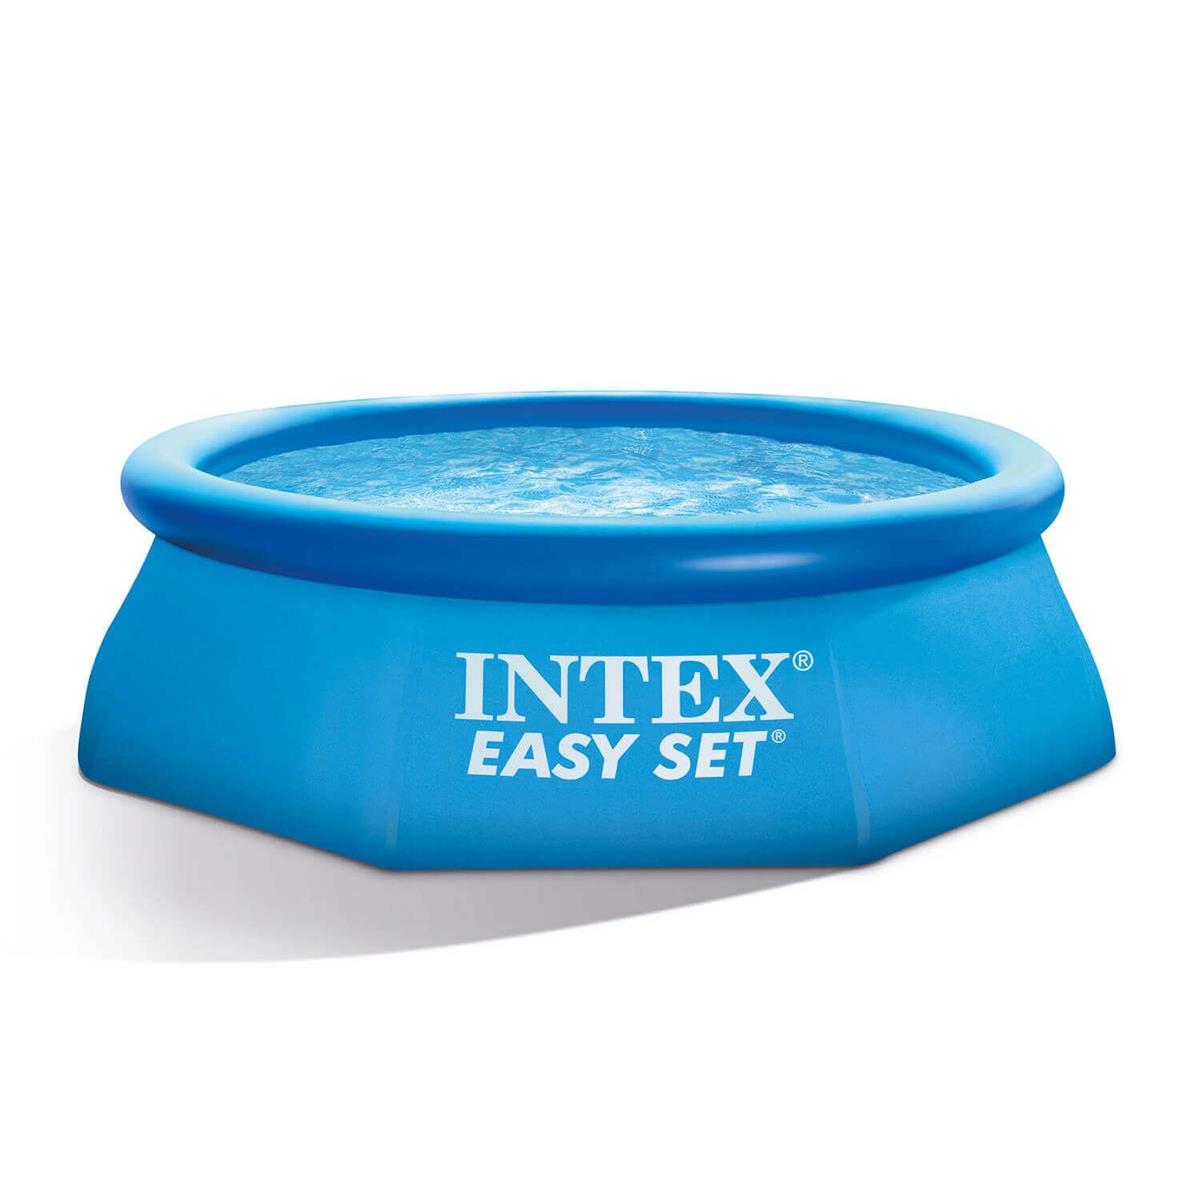 Бассейн Easy Set 3,05 х 0,61 м (28116) INTEX бассейн easy set 2 44 х 0 61 м 28106 intex